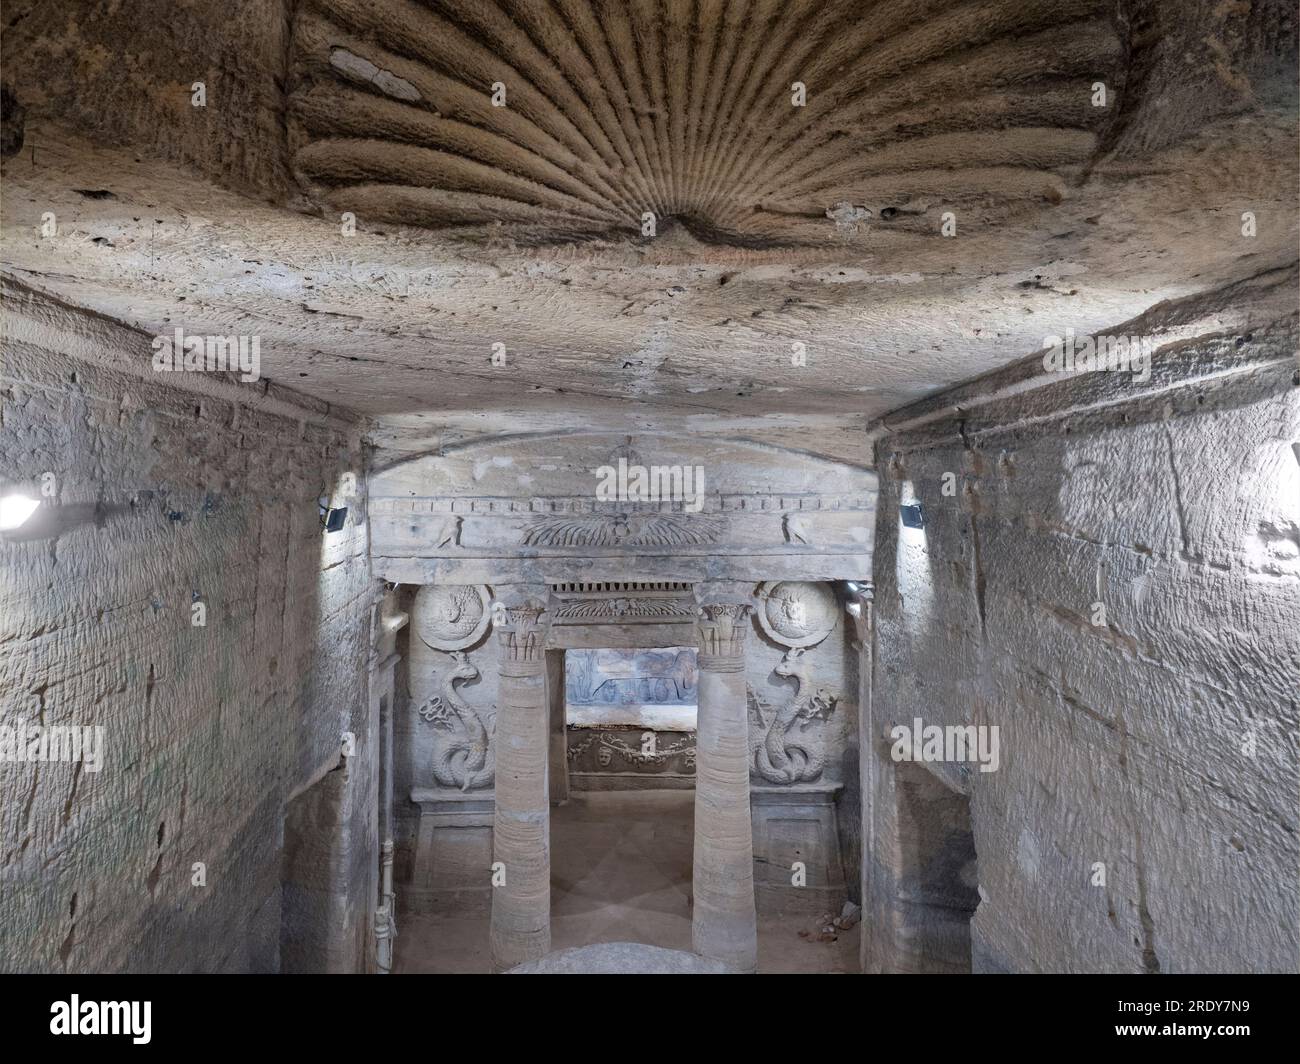 Die Katakomben von Kom El Shoqafa (Hügel der Shards) sind eine berühmte archäologische Stätte in Alexandria, Ägypten. Die Nekropole enthält Alexandrian To Stockfoto